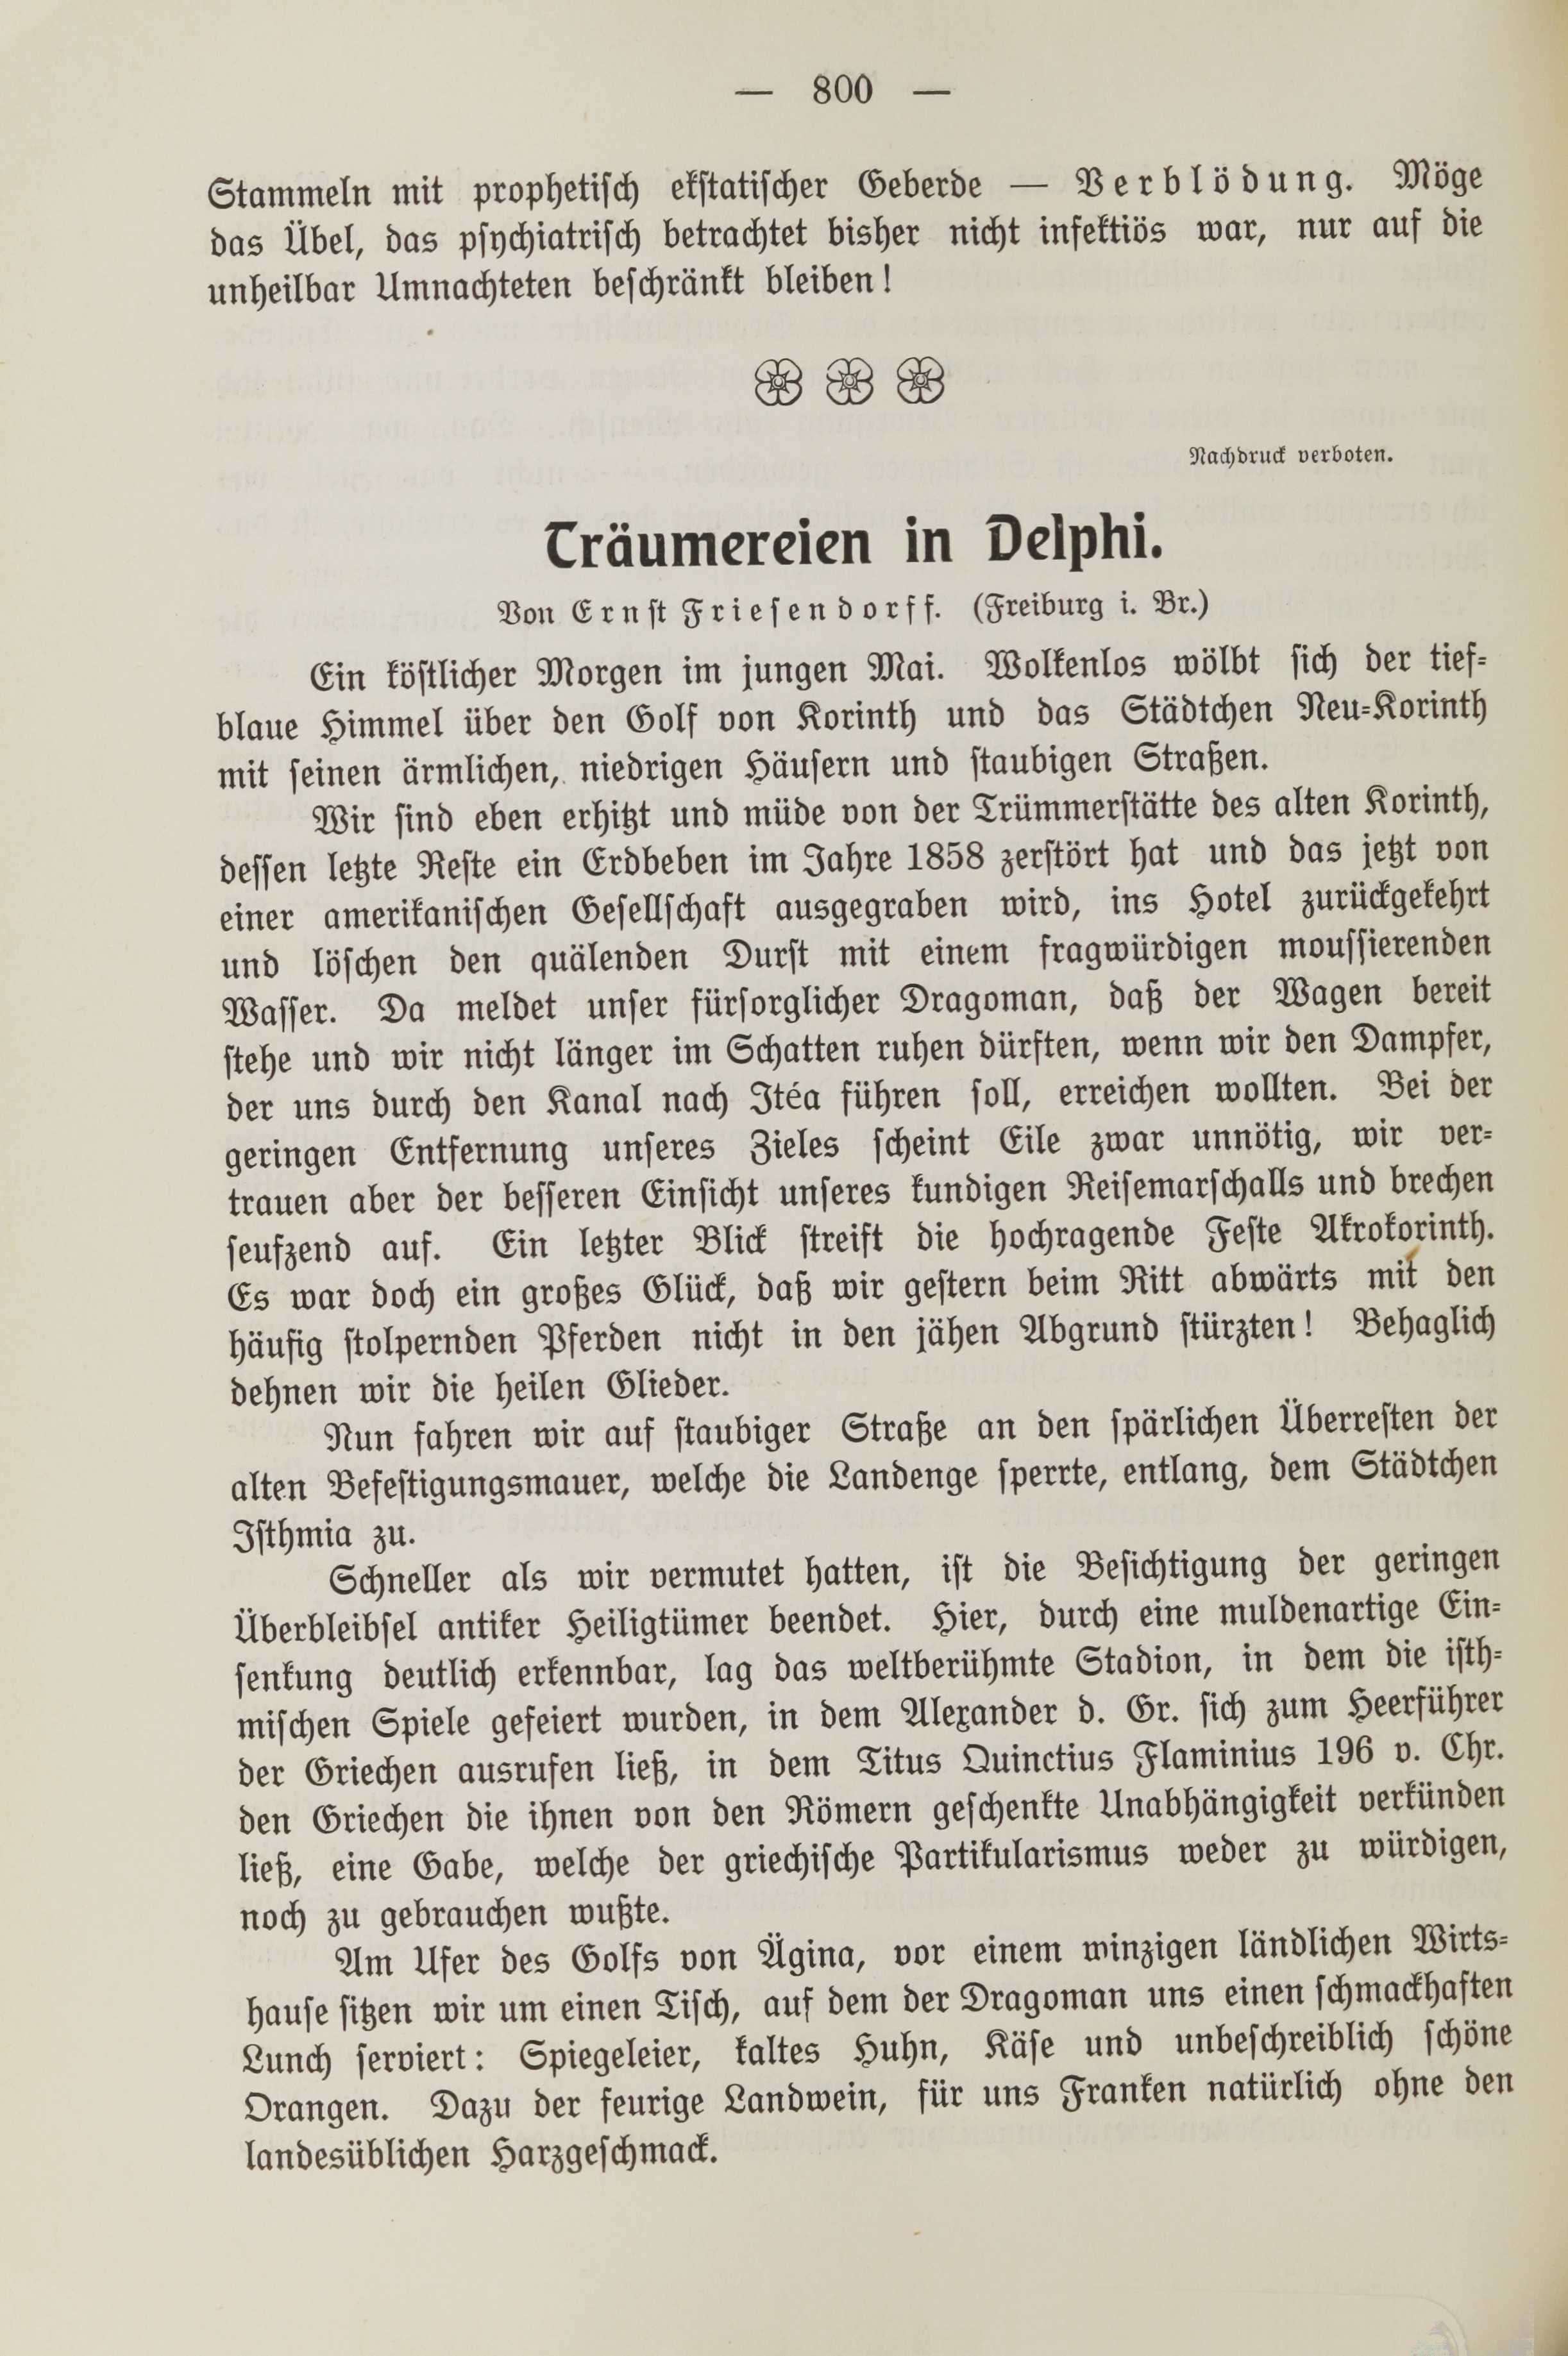 Träumereien in Delphi (1913) | 1. (800) Main body of text